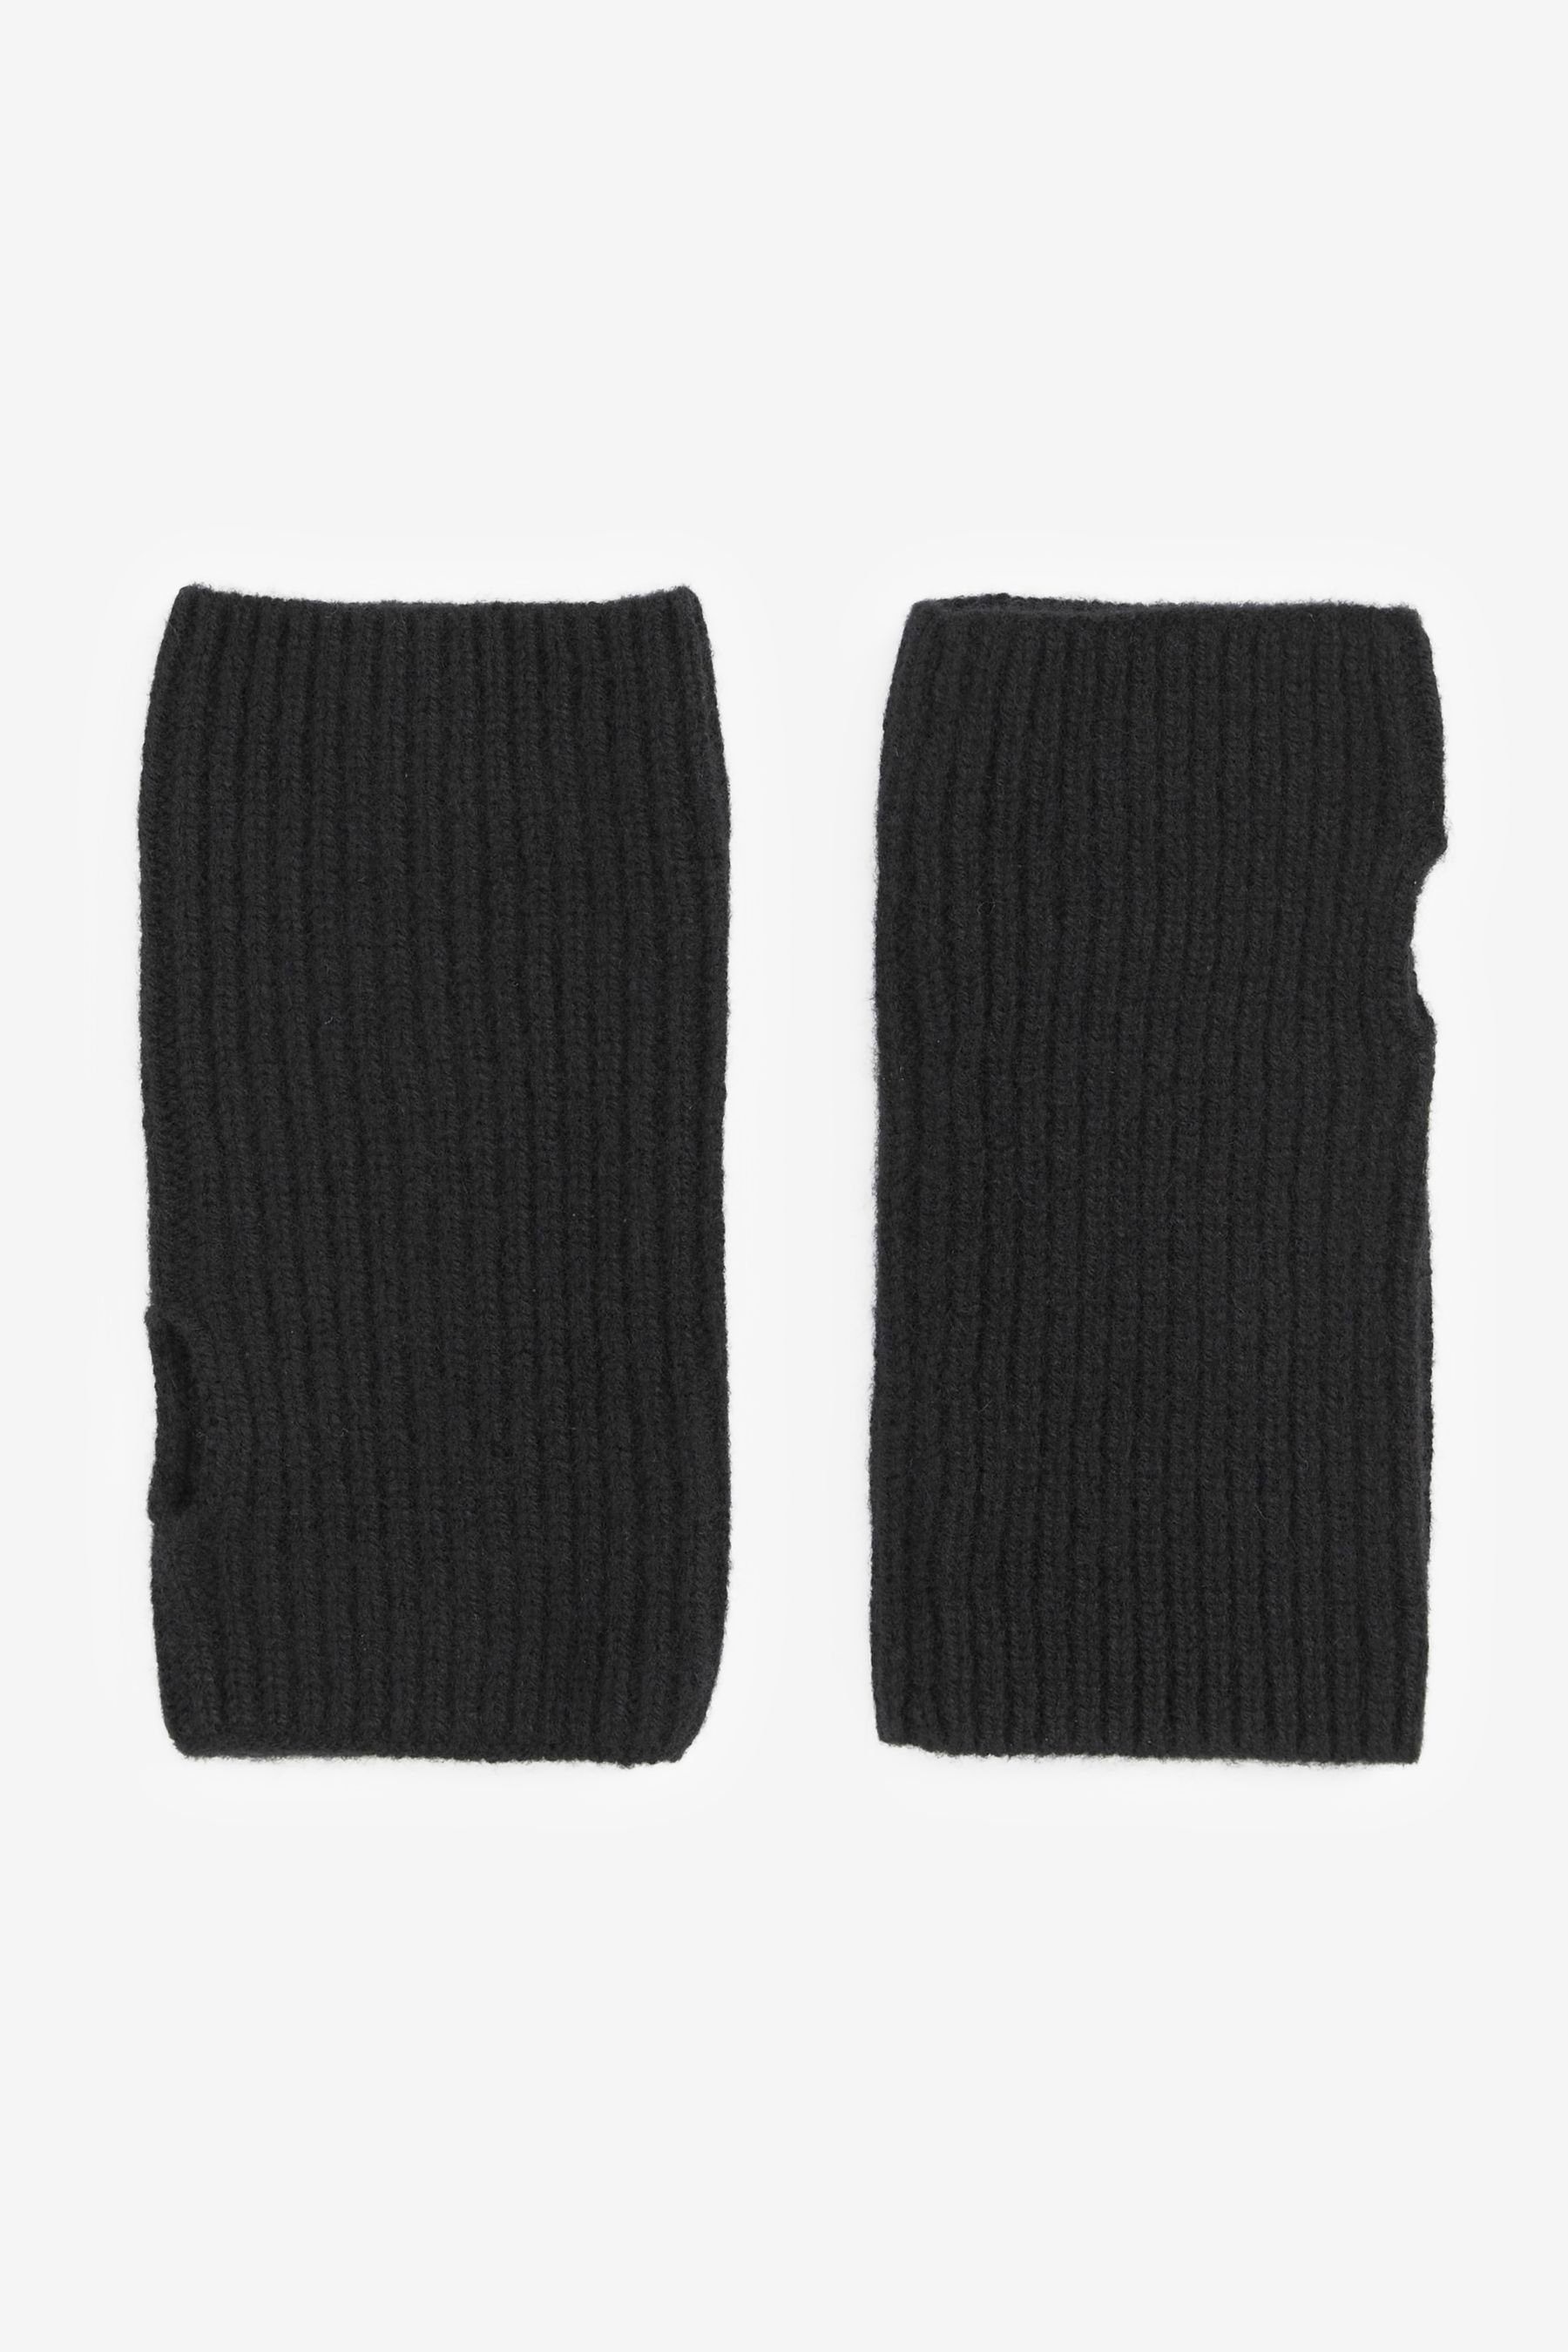 Luxe Collection Handschuhe 30% Handwärmer Next Kaschmir Black Strickhandschuhe